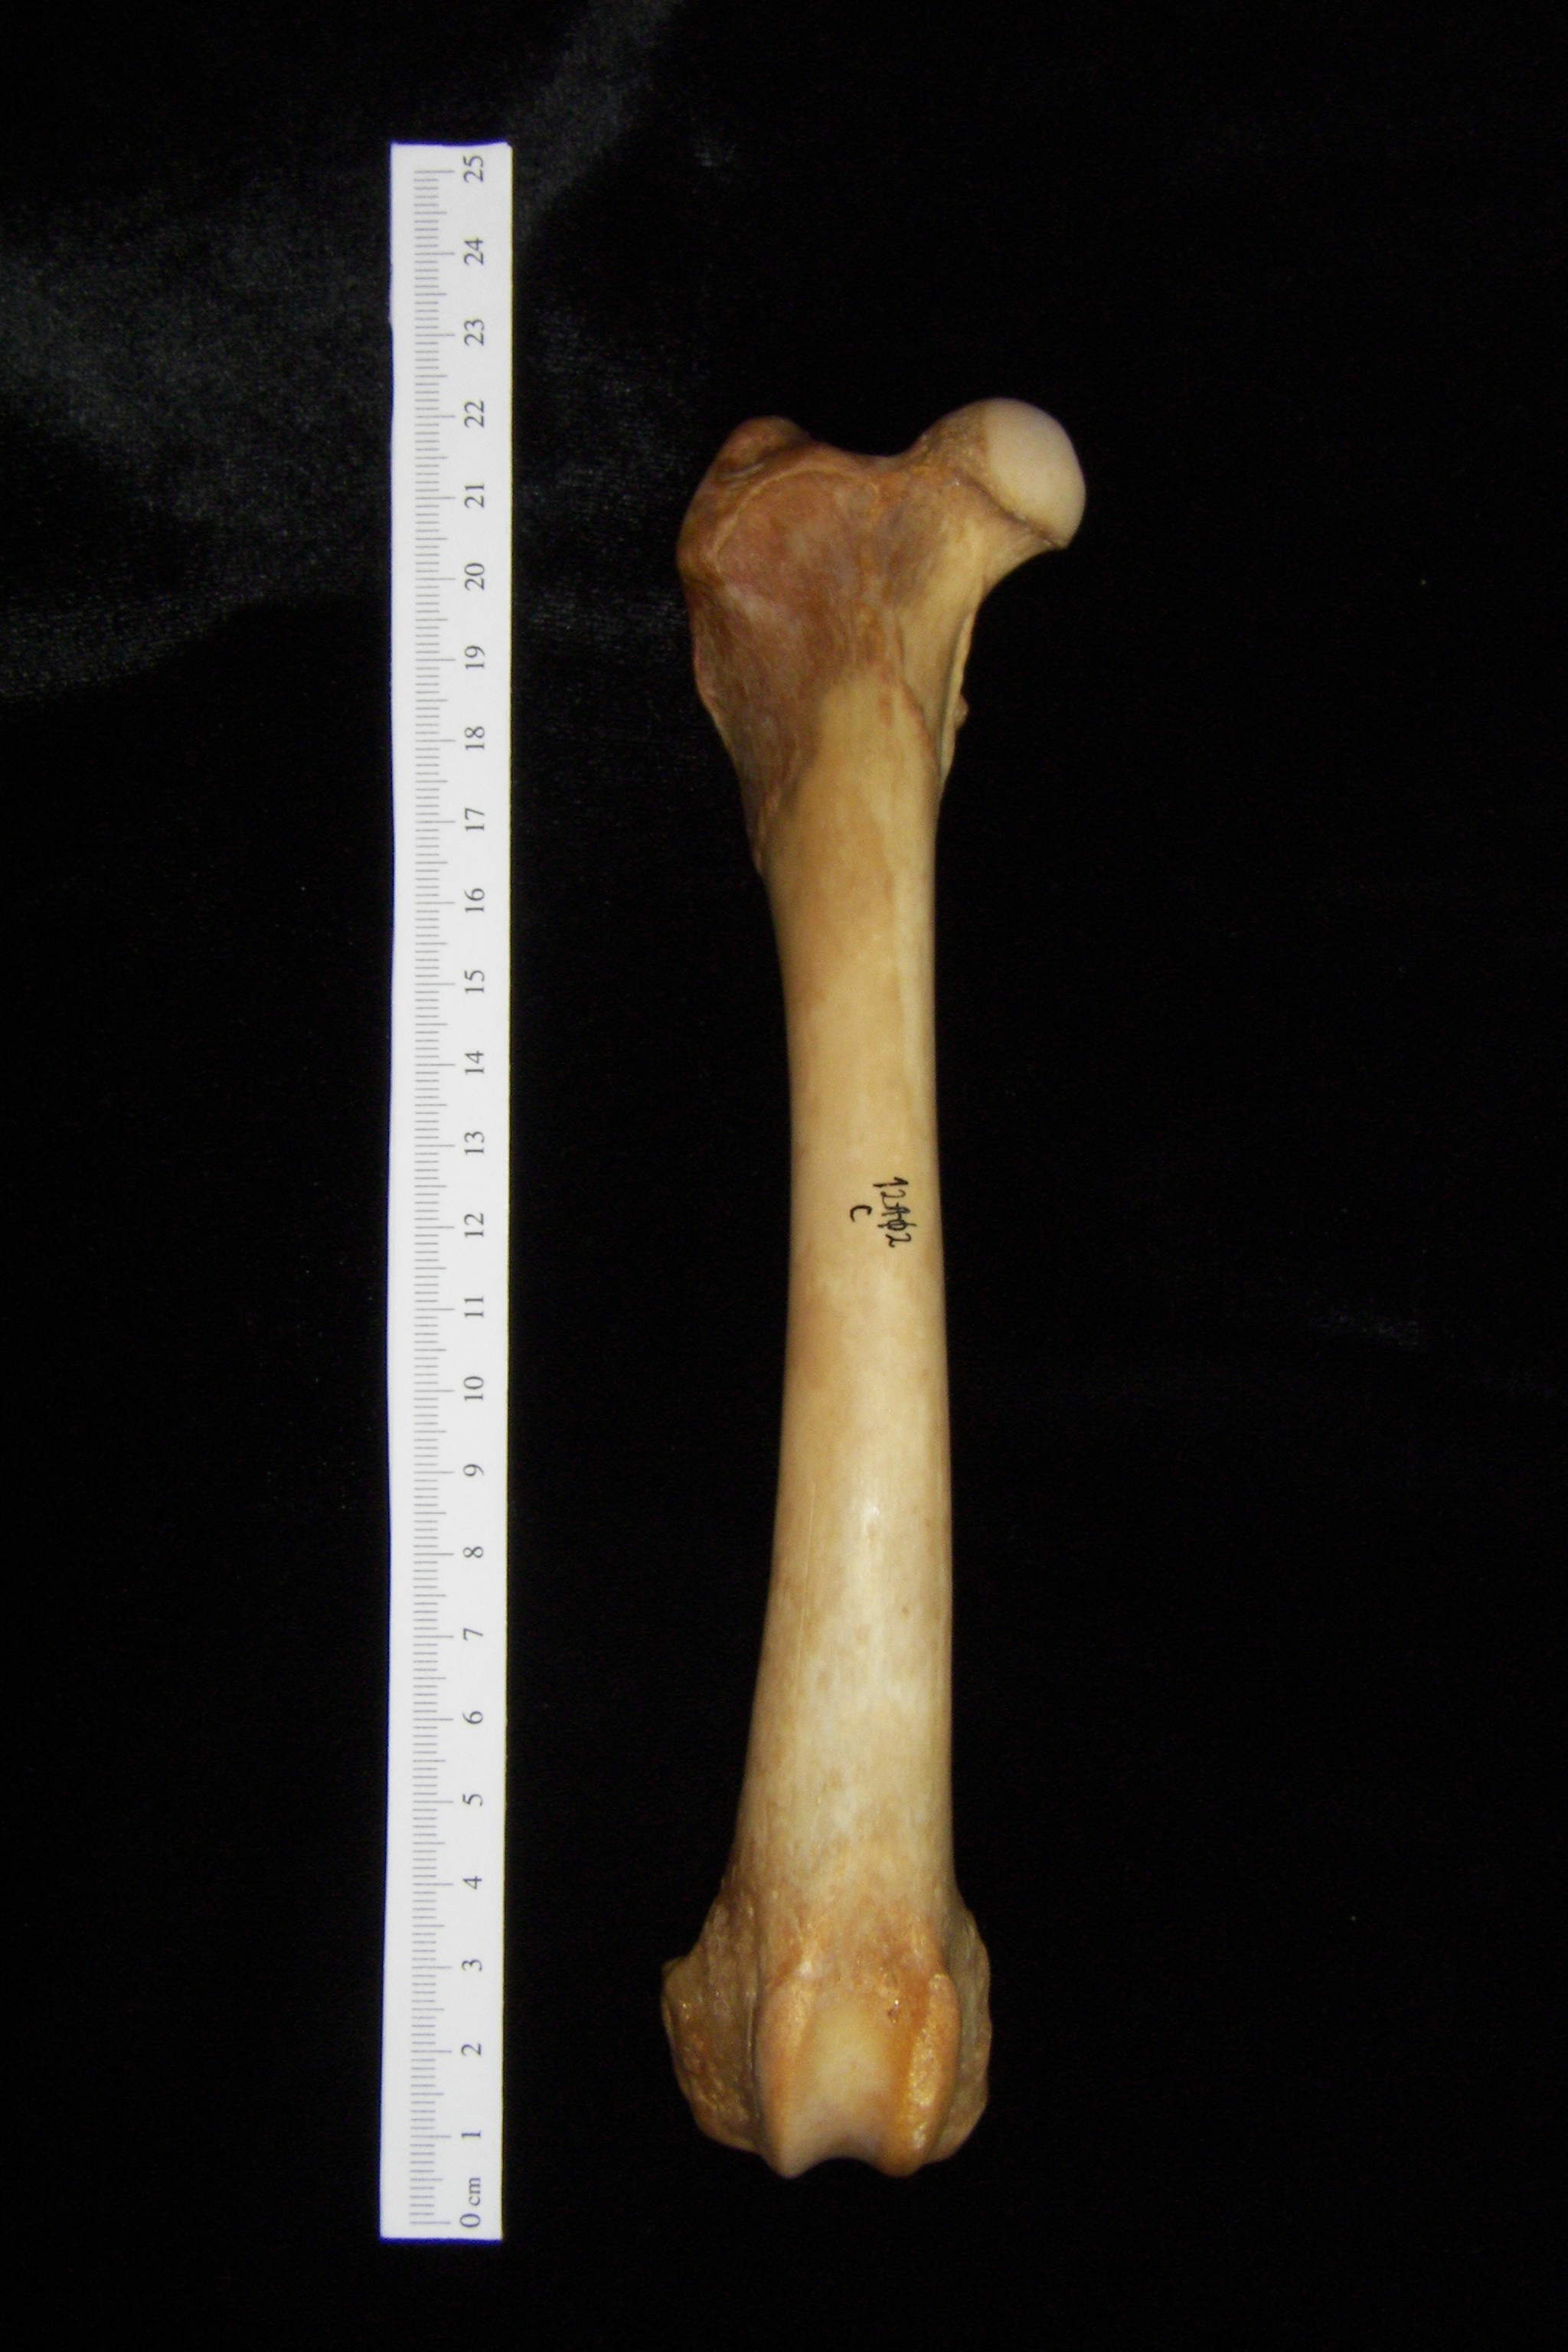 Dog (Canis lupus familiaris) right femur, anterior view